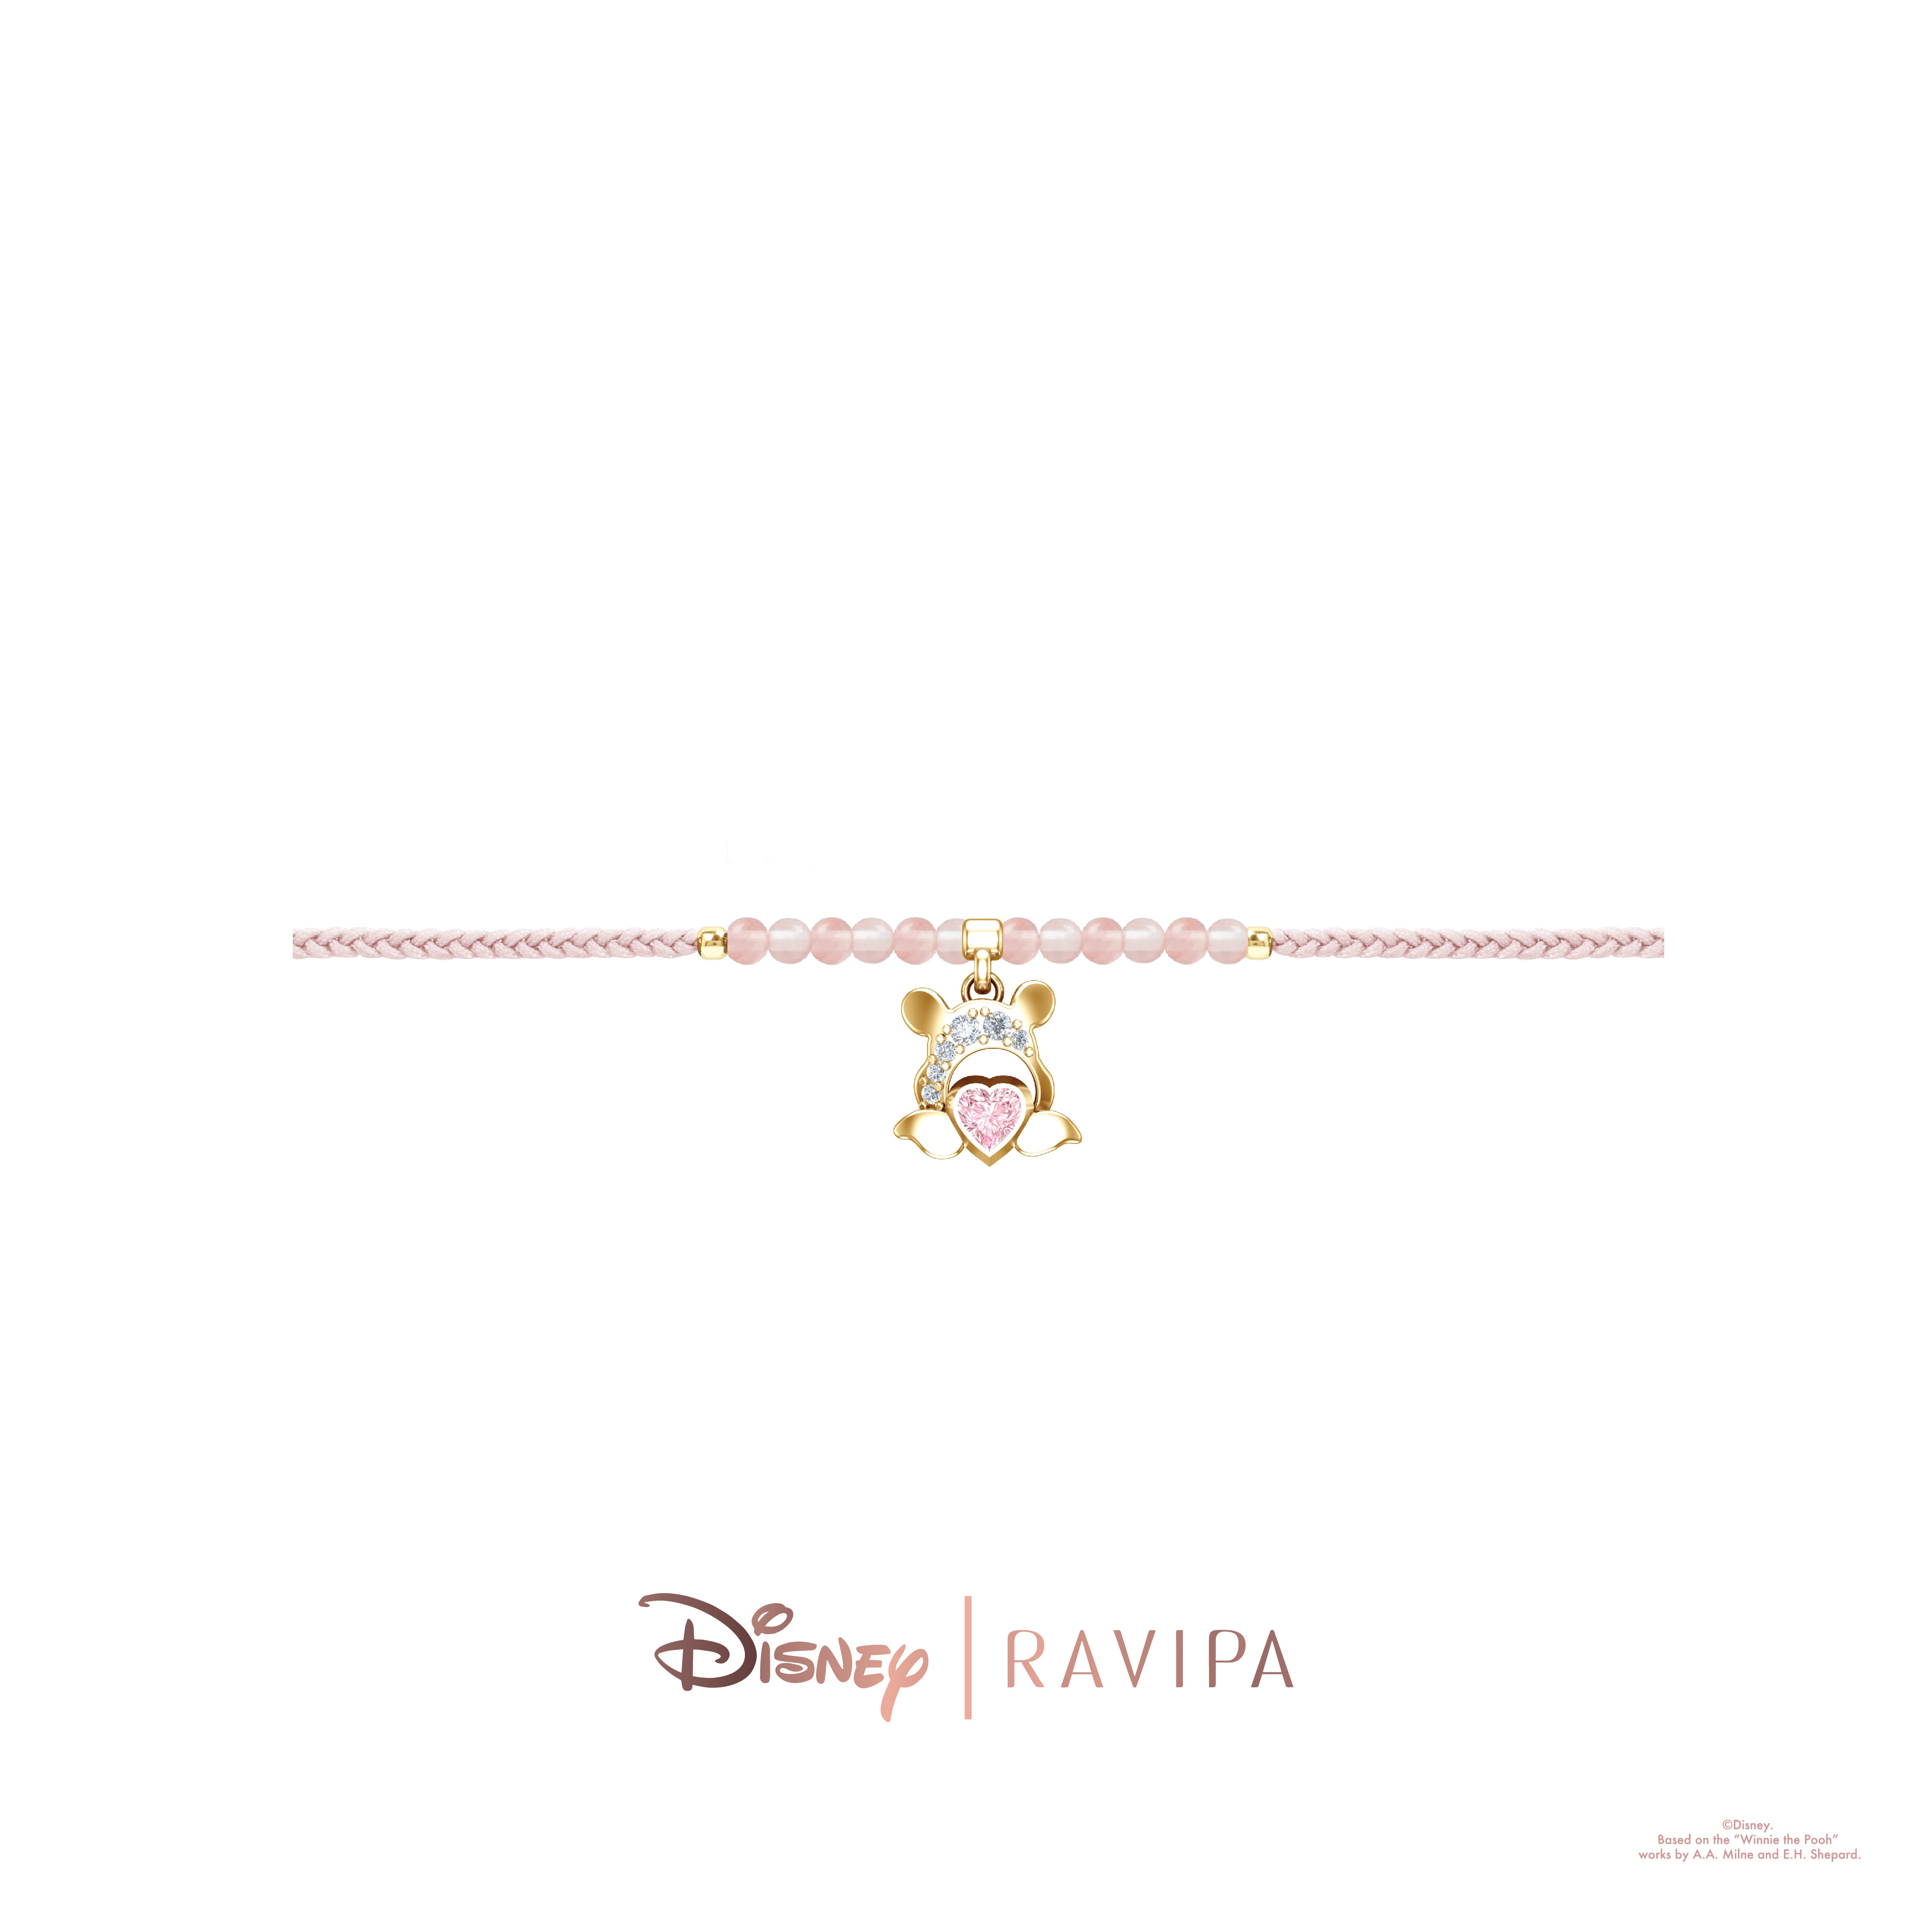 Piglet Winnie the Pooh Disney Inspired Bangle Charm Bracelet - Etsy